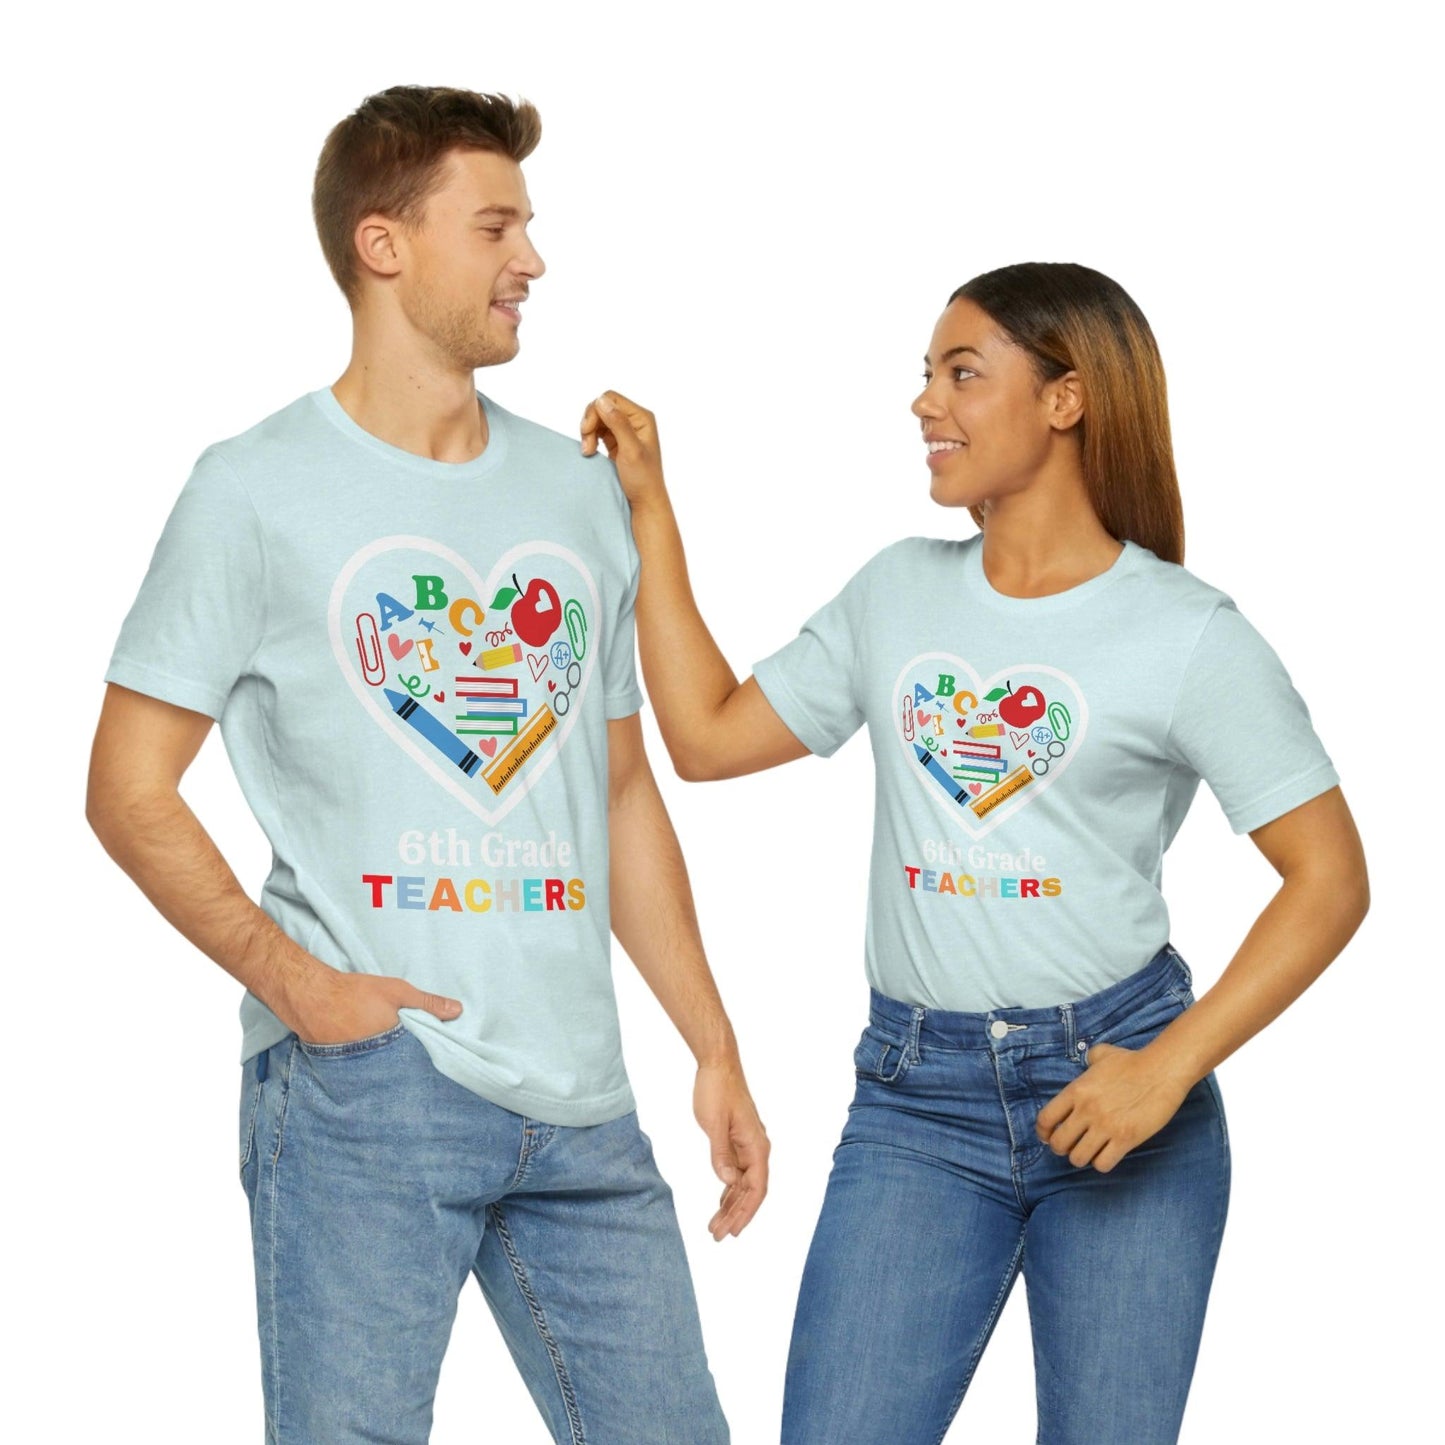 Love 6th Grade Teacher Shirt - Teacher Appreciation Shirt - Gift for Teachers - 6th Grade shirt